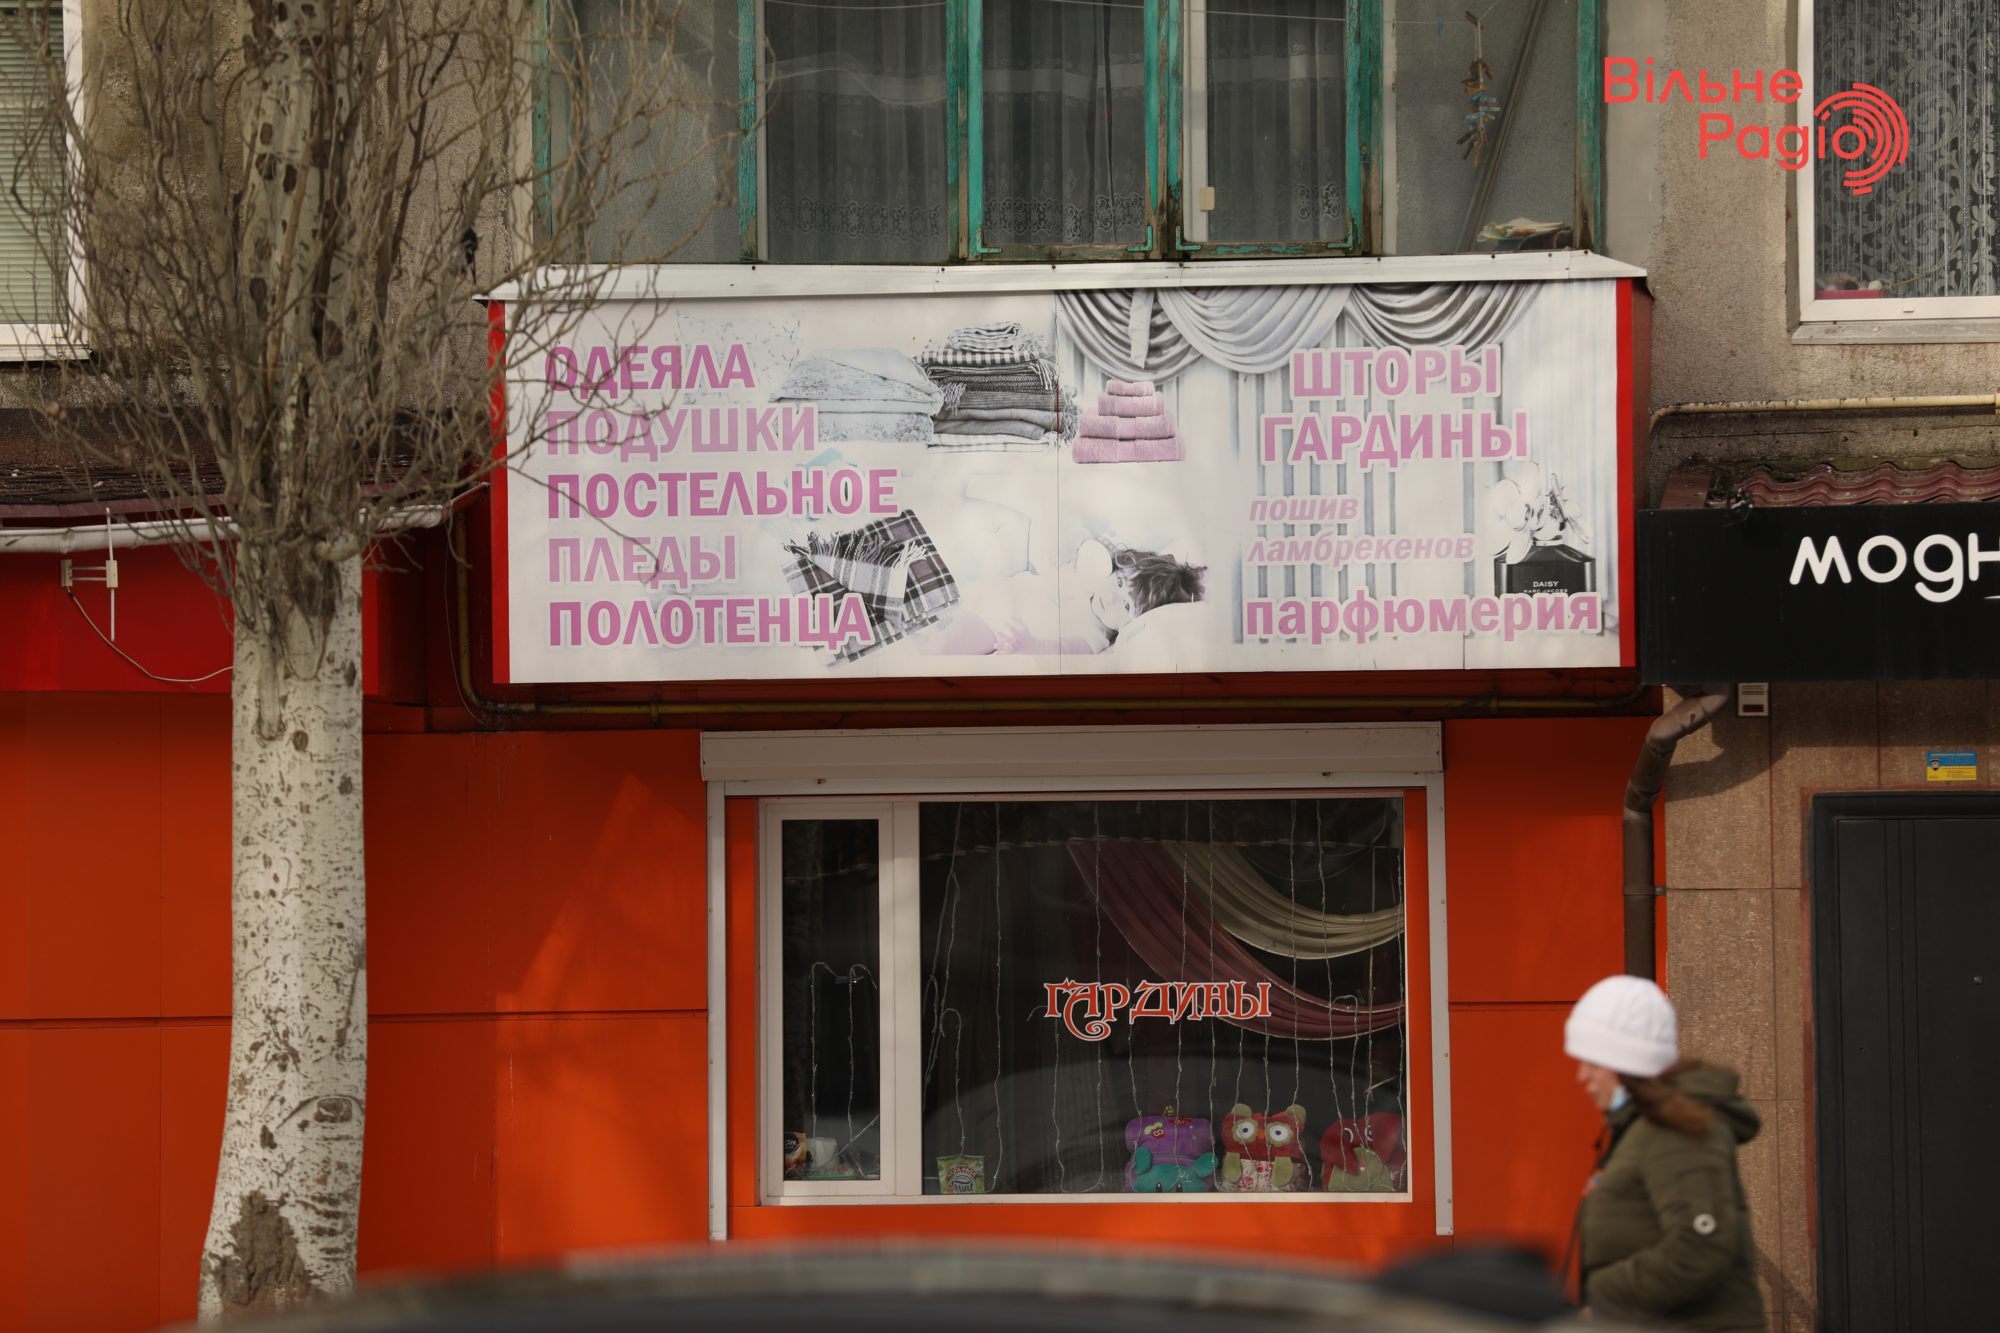 Глав 7 громад Донбасса просят убрать рекламу, которая нарушает “языковой” закон. Какая ситуация в Бахмуте”(ФОТО) 16